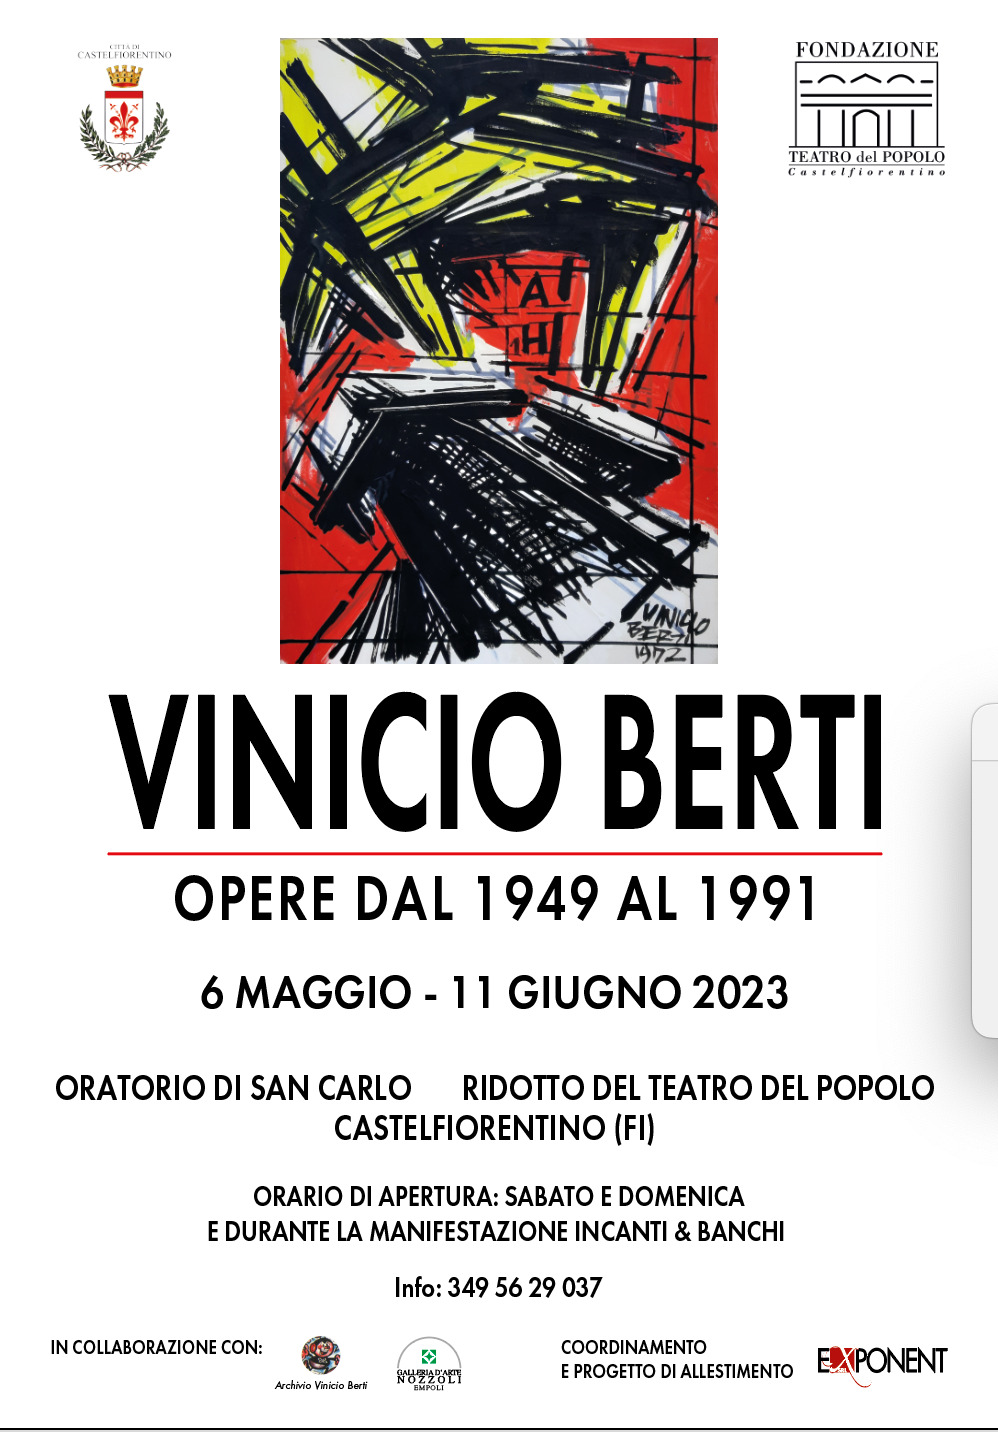 Le opere di Vinicio Berti